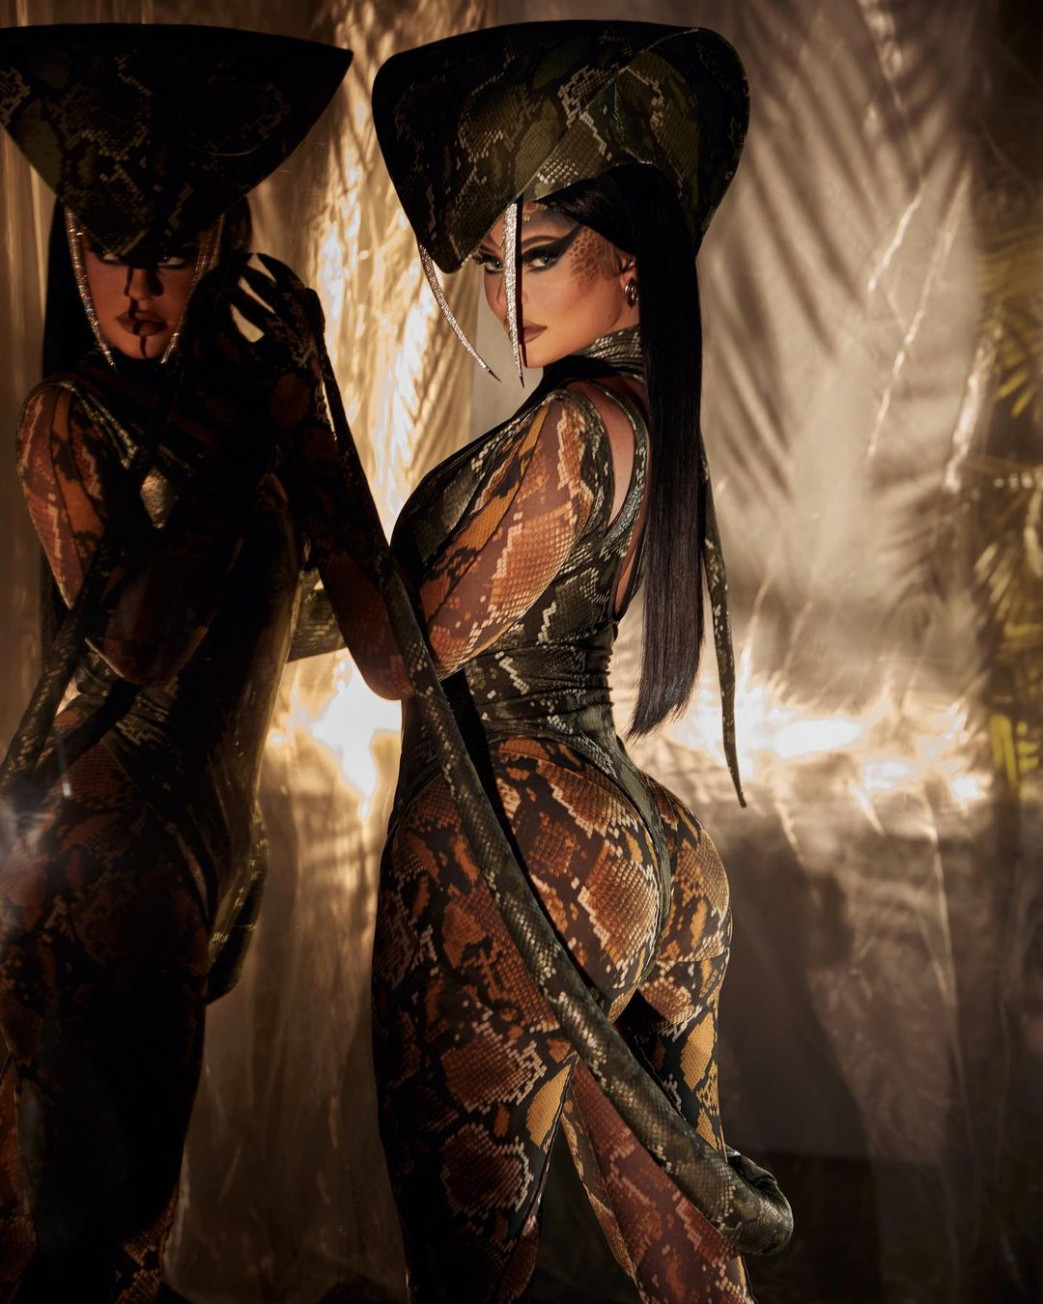 Kylie-Jenner-In-Cobra-Hallowen-Costume-5.jpg